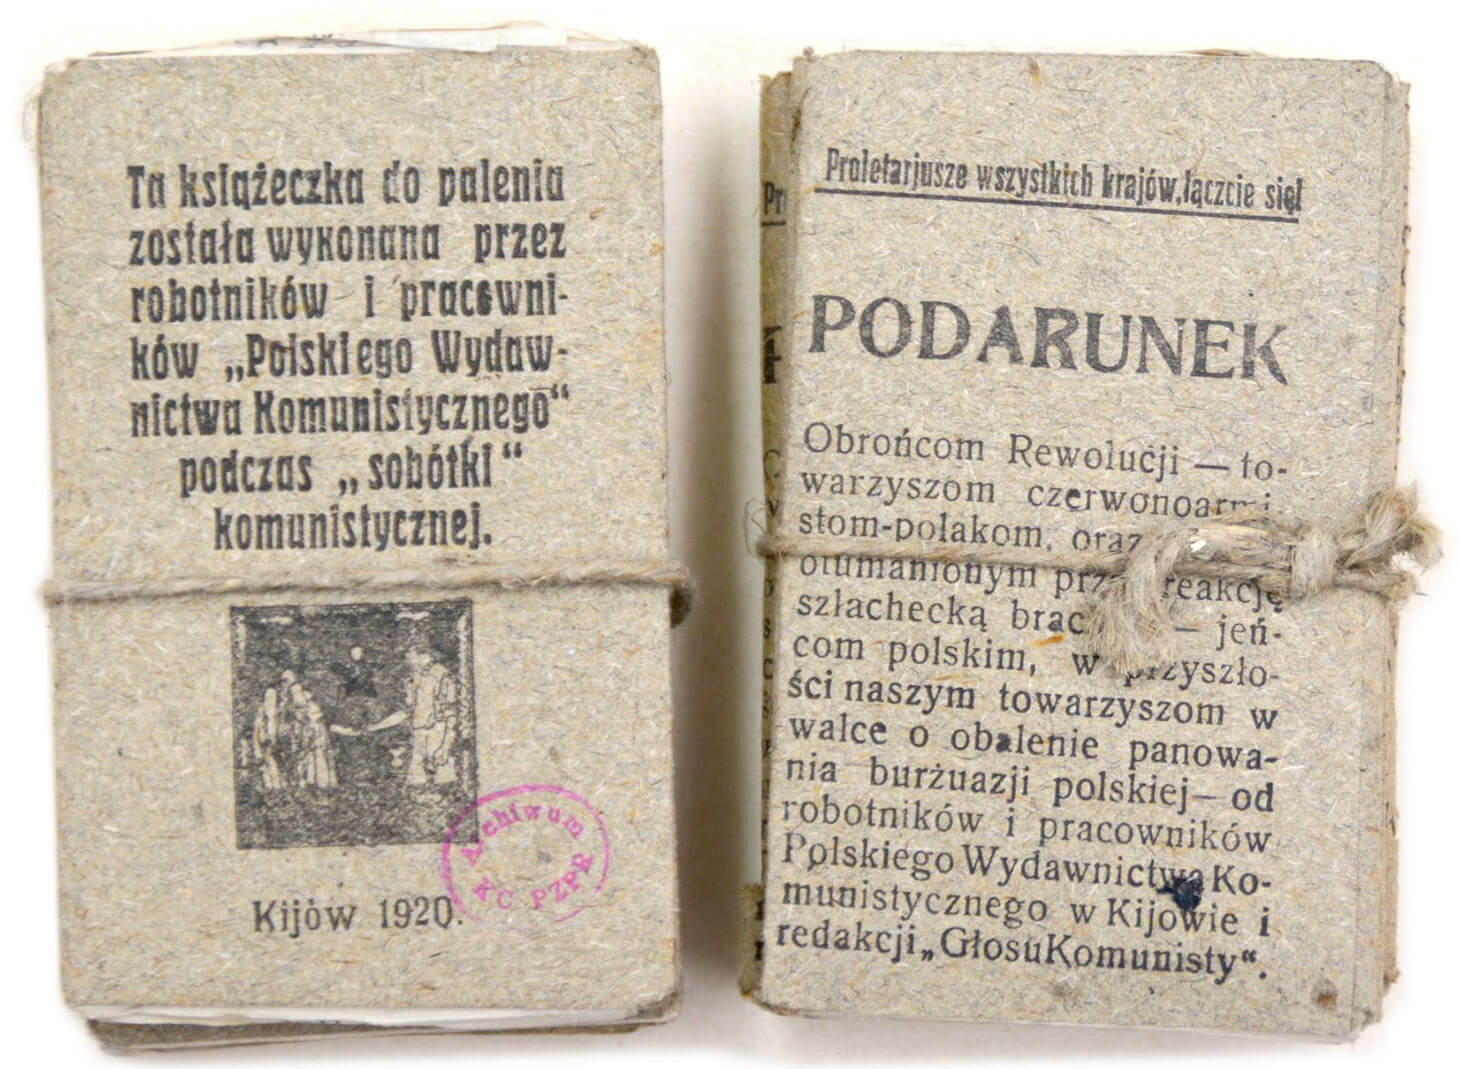 Ilustracja przedstawia dwie paczuszki szarawych papierów. Każda przewiązana jest sznurkiem konopnym. Pierwsza karta w lewym pakunku, ma wydrukowane, rozbite na siedem wersów, wyrównane w osi zdanie: Ta książeczka do palenia została a wykonana przez robotników i pracowników “Polskiego Wydawnictwa Komunistycznego” podczas “sobótki” komunistycznej. Pod napisem znajduje się słabo czytelna grafika w kwadracie, pod nią napis: Kijów 1920. Obok, widnieje fioletowa, owalna pieczątka Archiwum KC PZPR. Paczuszka po prawej stronie ma u góry winietę z napisem: Proletariusze wszystkich krajów, łączcie się! Centralnie widnieje słowo “Podarunek” wydrukowane wielkimi literami. Pod spodem znajduje się tekst wydrukowany w bloku, zaczynający się od słów: Obrońcom Rewolucji.